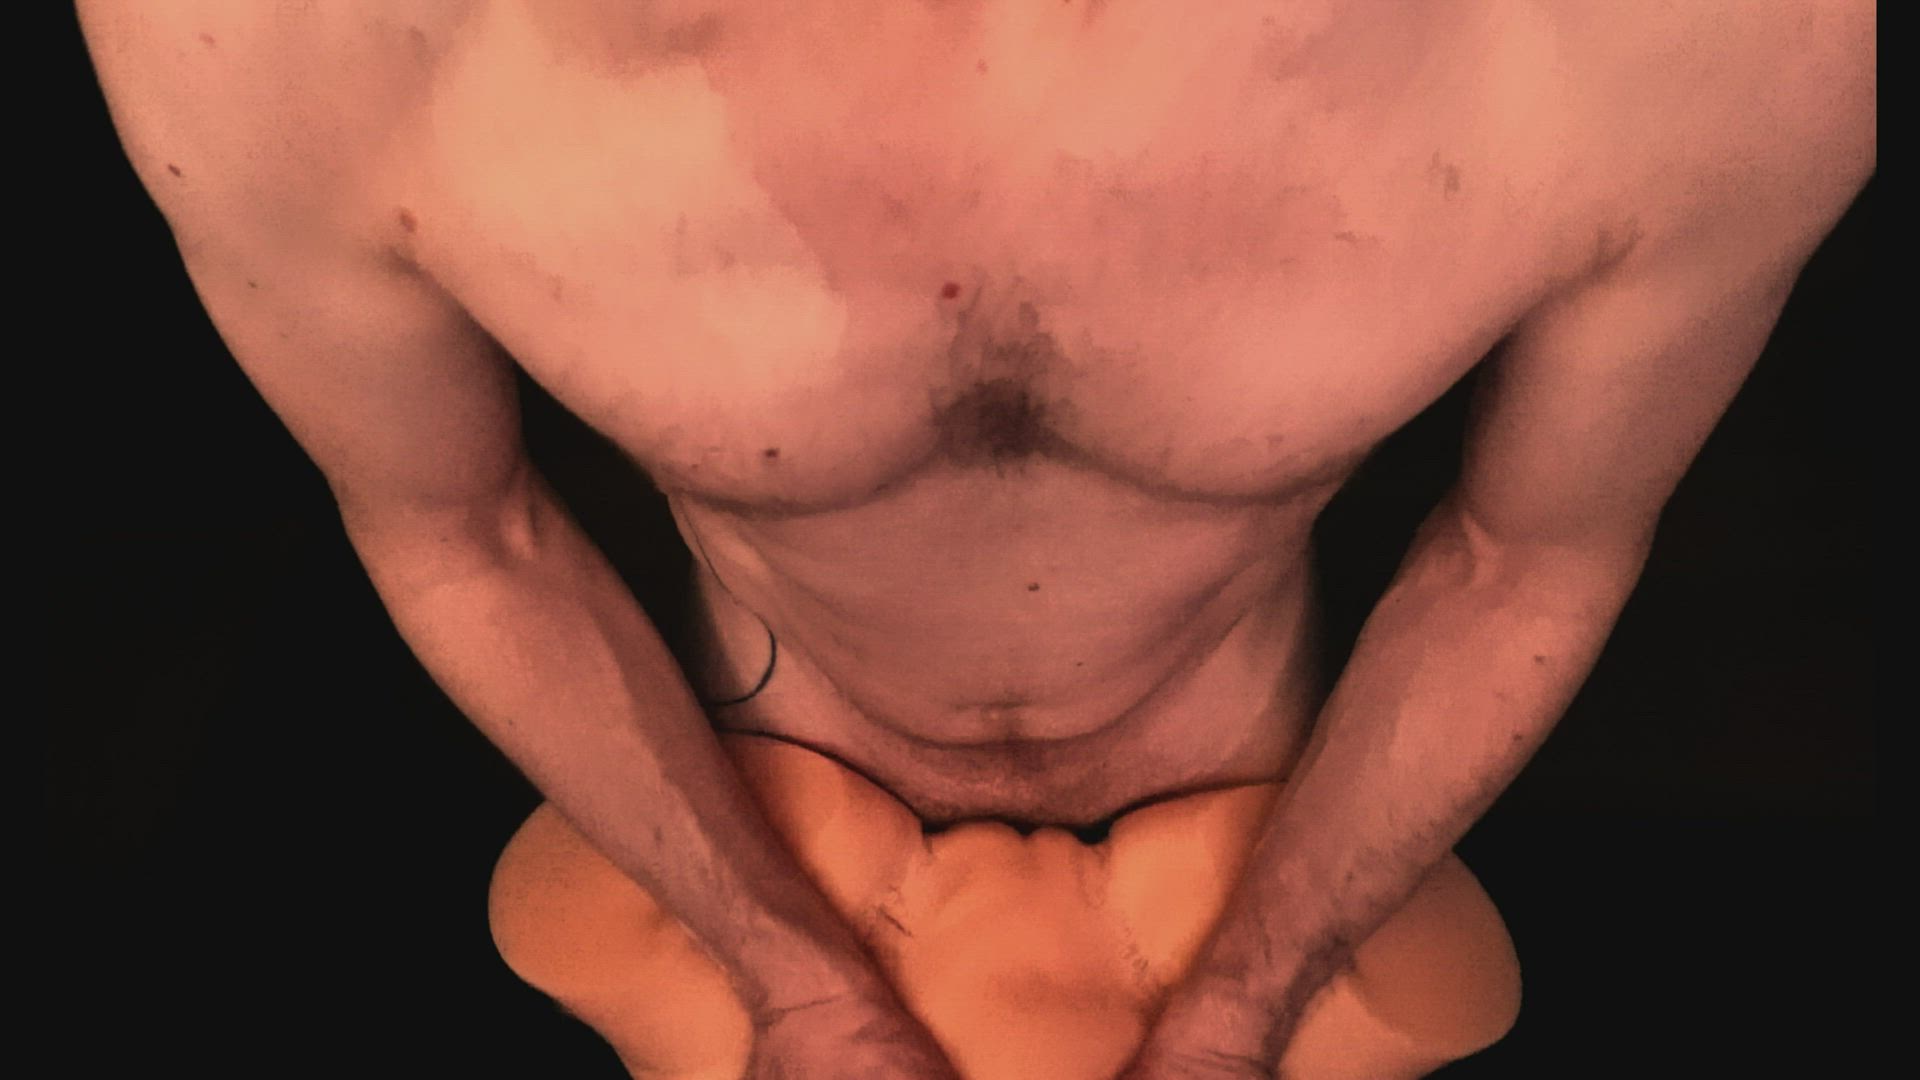 Big Dick porn video with onlyfans model Dave Coronado <strong>@davecoronado</strong>